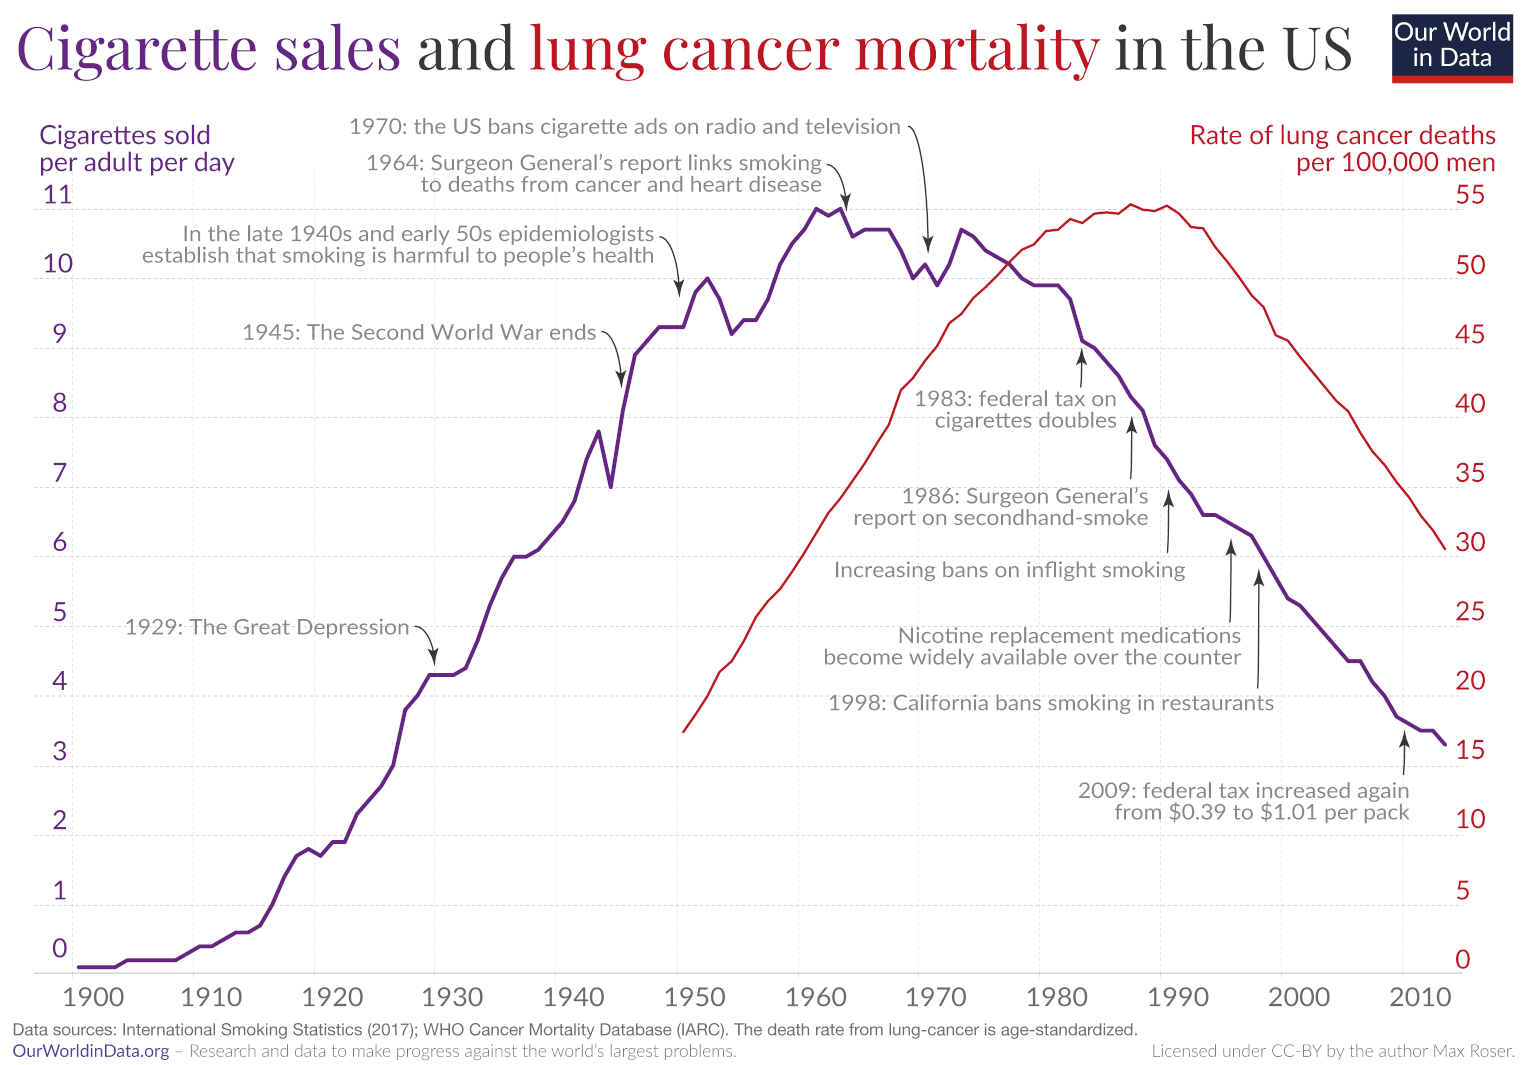 Verkaufte Zigaretten und Lungenkrebsrate in den USA im Vergleich